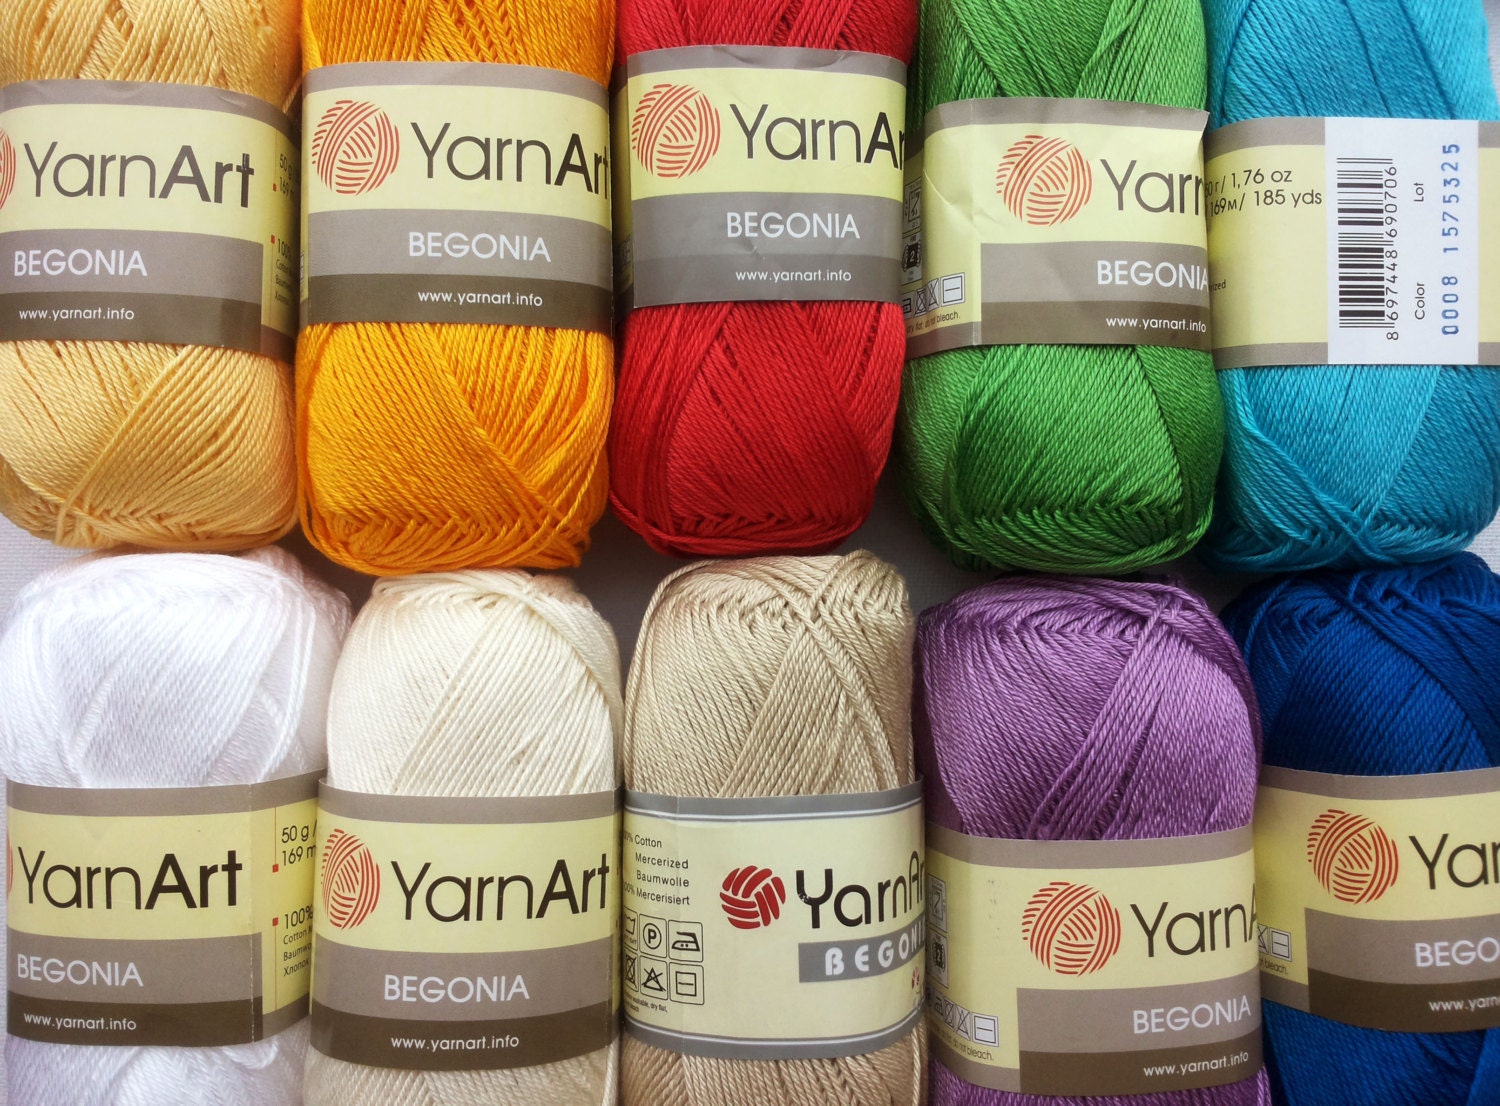 20 Skein Yarnart Begonia Yarn, 100% Mercerized Cotton, Each 1.76 oz (50g) / 185 Yrds (169m), Fine Sport: 2